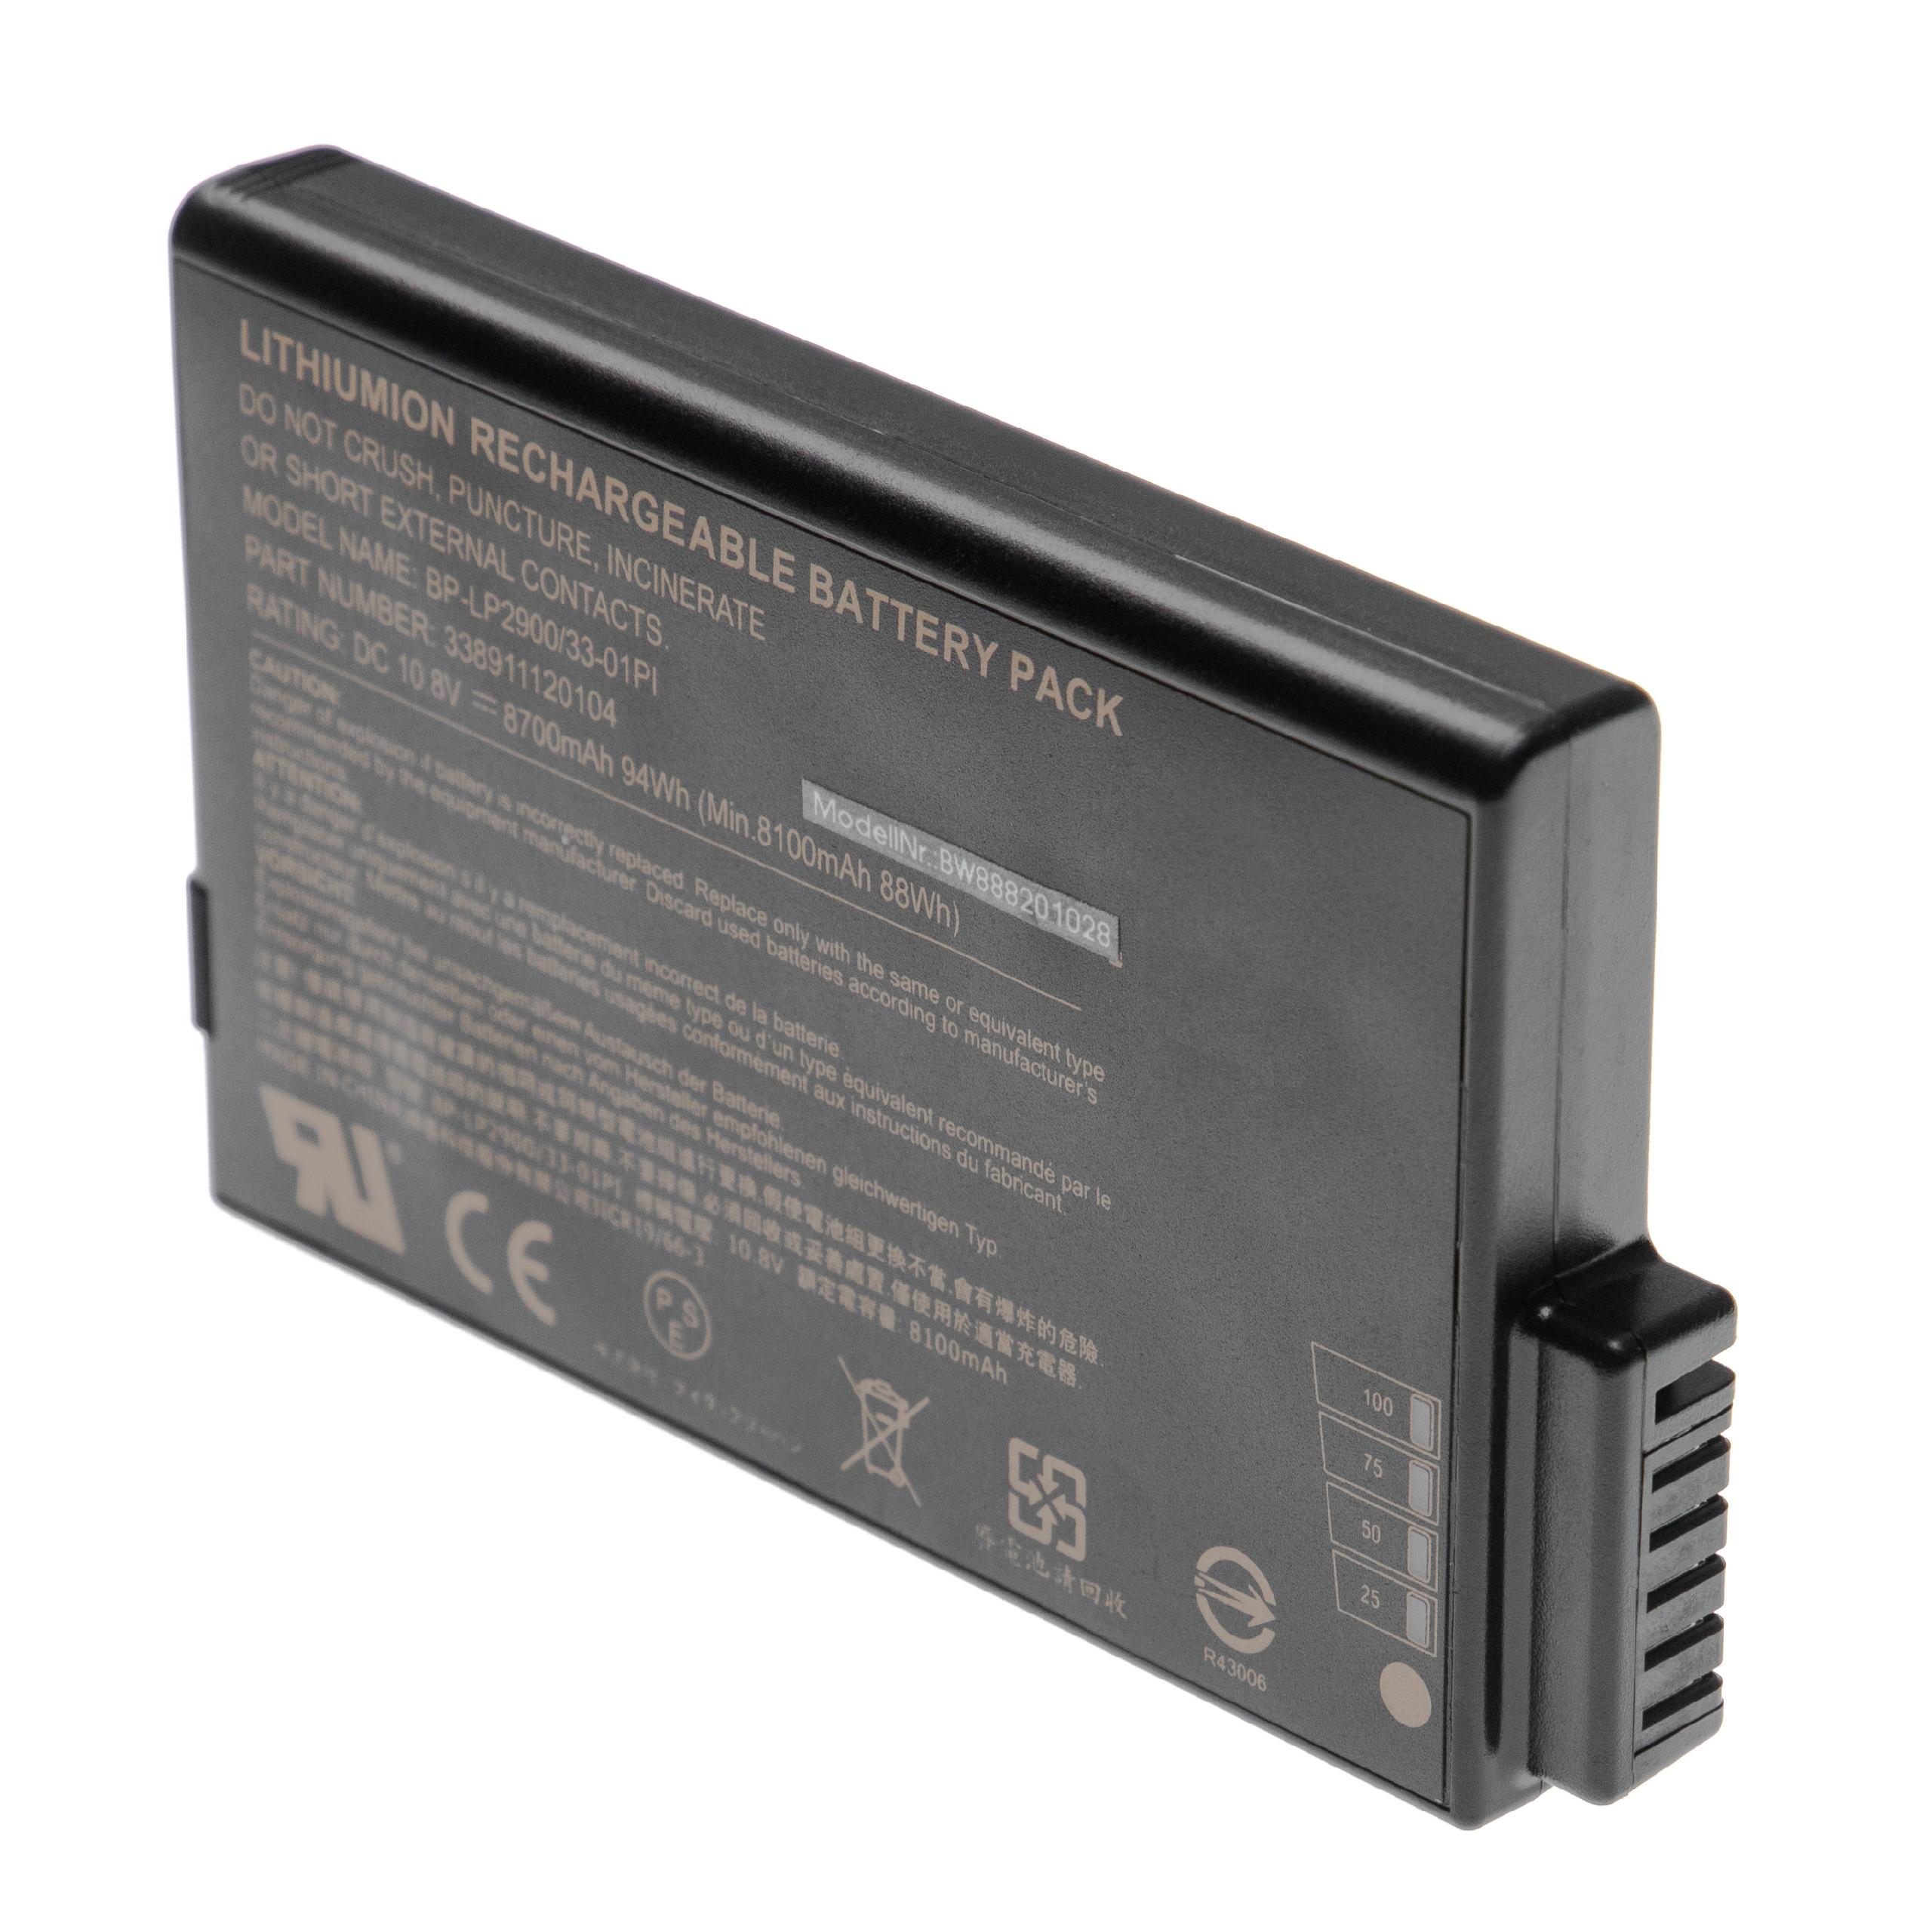 Batterie remplace Getac / Hasee 33-01PI, 338911120104 pour ordinateur portable - 8700mAh 10,8V Li-ion, noir